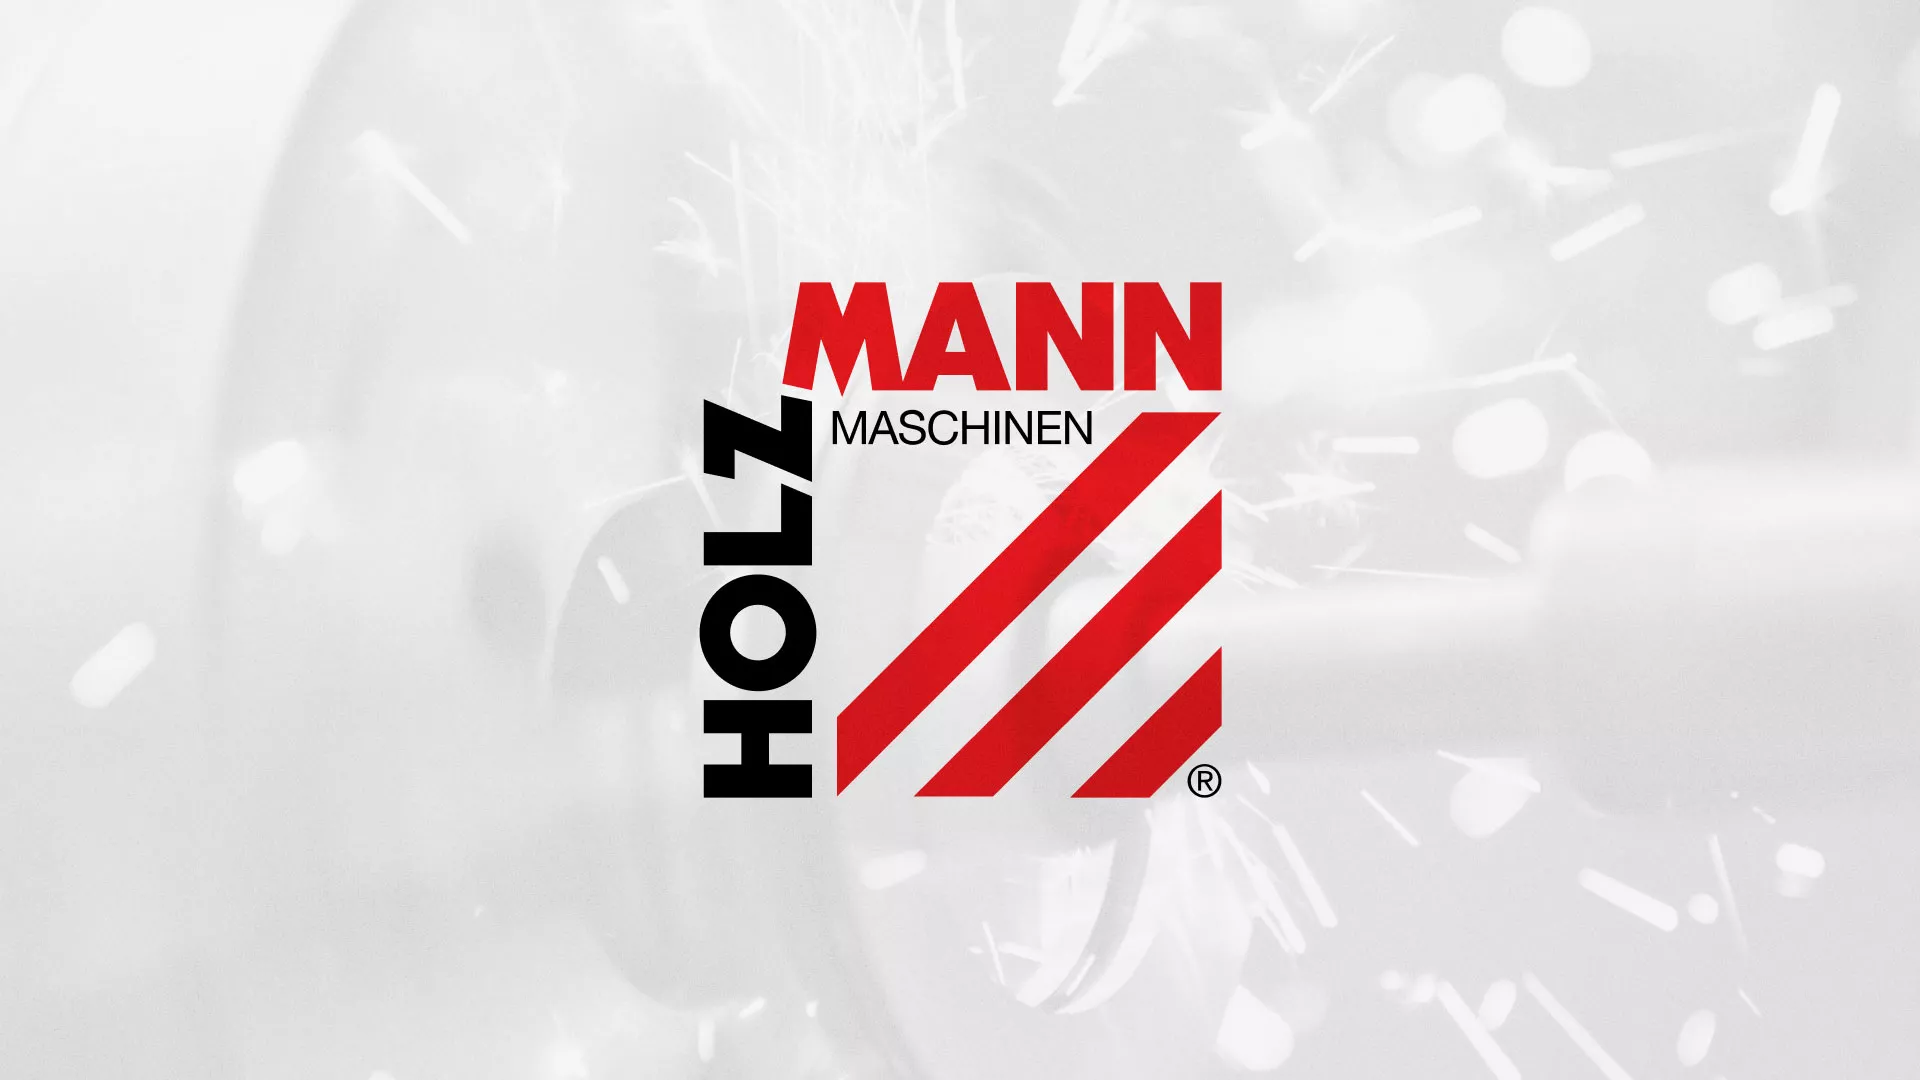 Создание сайта компании «HOLZMANN Maschinen GmbH» в Челябинске